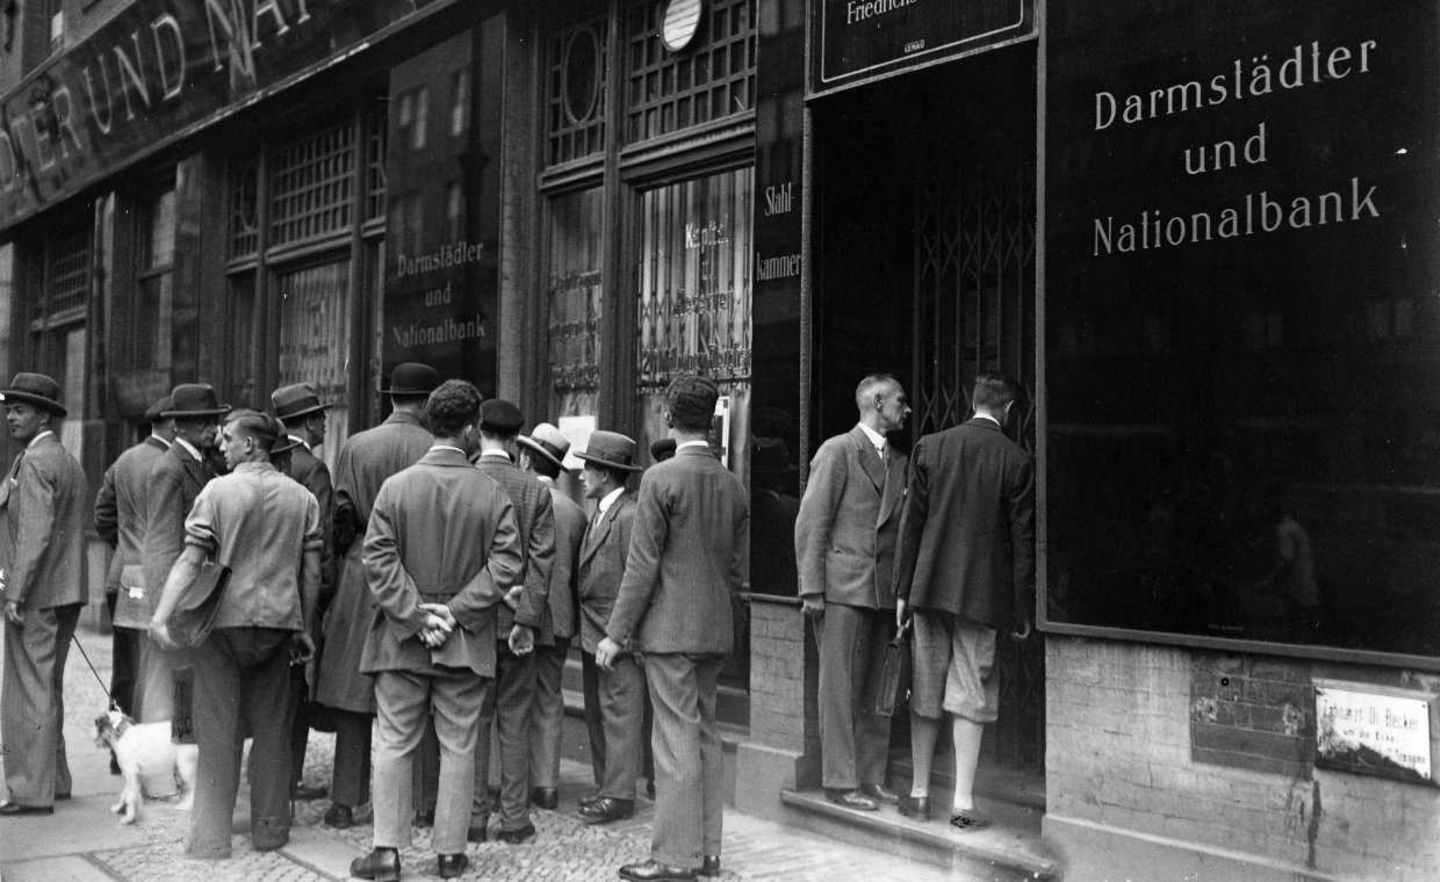 Als die ersten Kunden am 13. Juli 1931 bei der Danat-Bank vor verriegelter Tür stehen, setzt rasch Panik ein. Die noch geöffneten anderen Institute werden überrannt, die Regierung muss „Bankfeiertage“ für alle verordnen